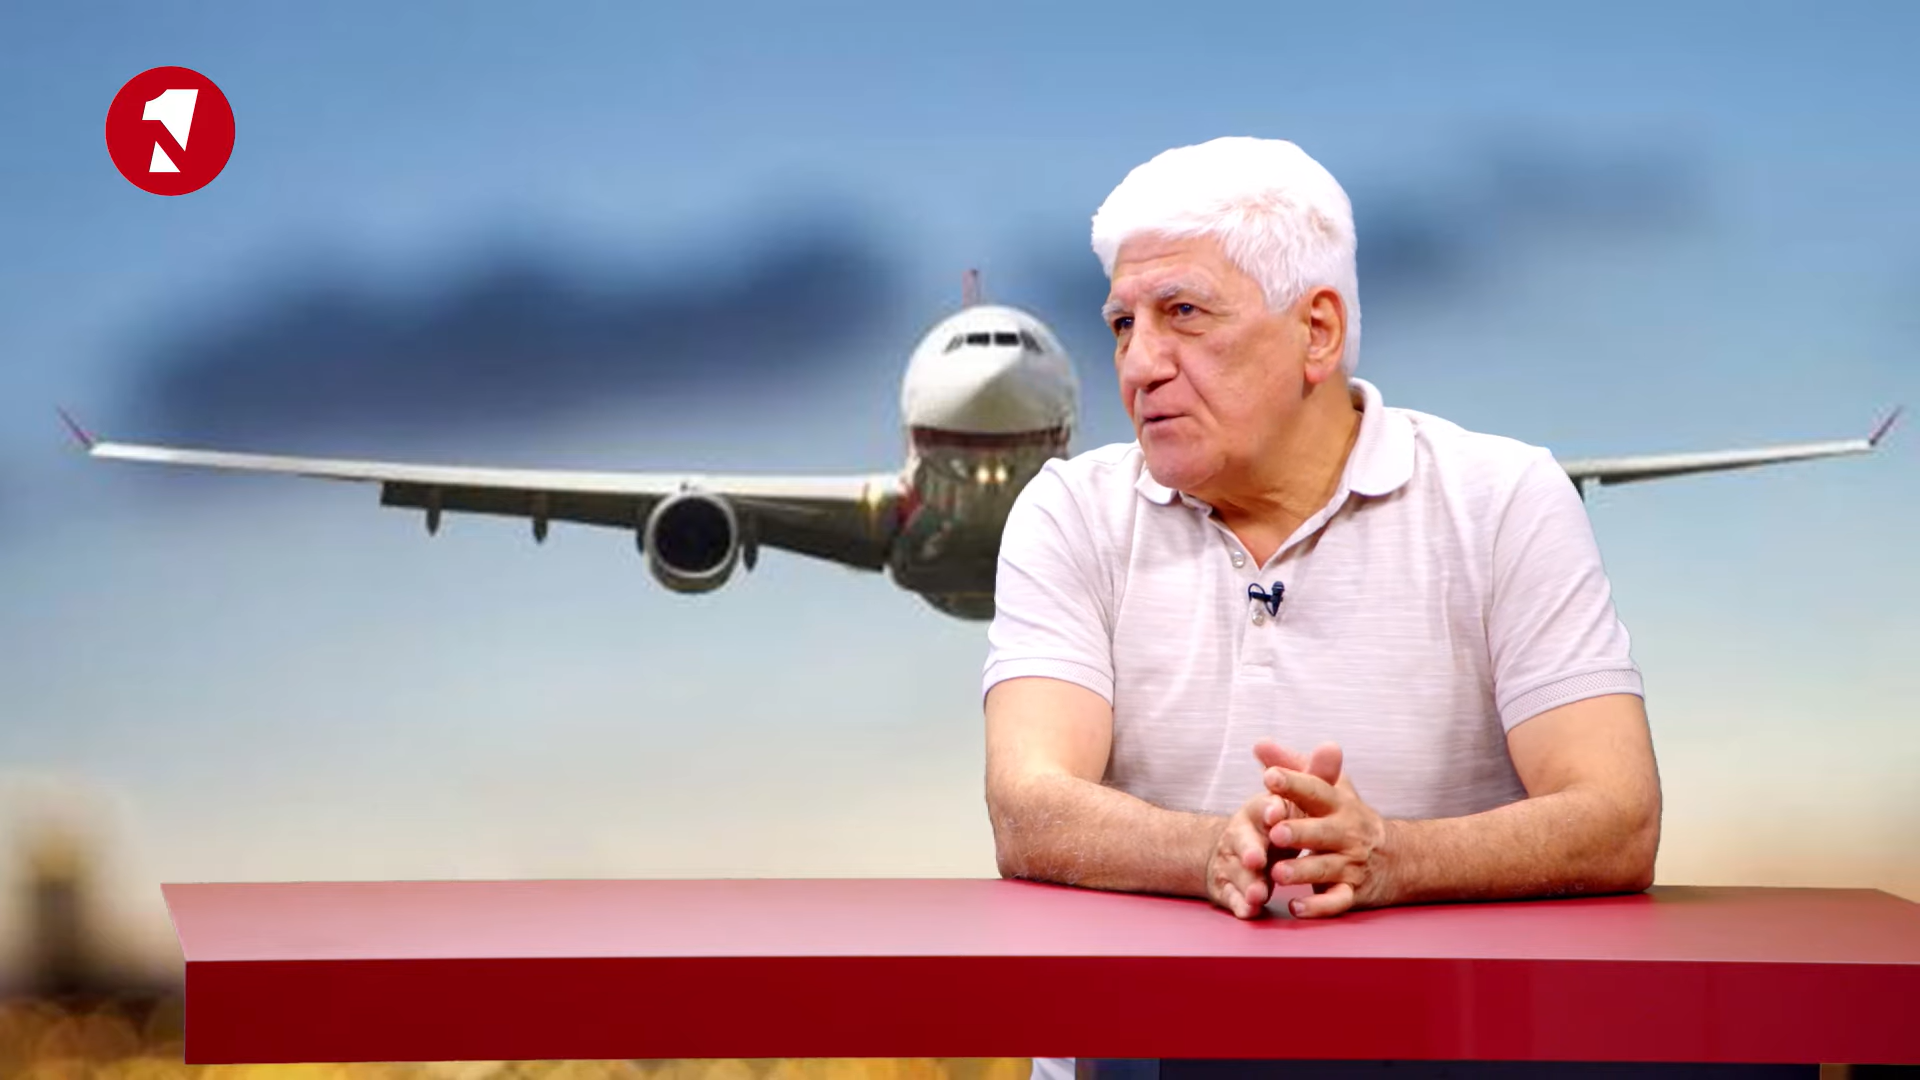 Քոչարյանը վերացրեց ավիացիան Հայաստանում․ «Էյր Արաբիան» փոփոխություններ է բերելու․Քաղավիացիայի նախկին տնօրեն․ Տեսանյութ․ 1in.am